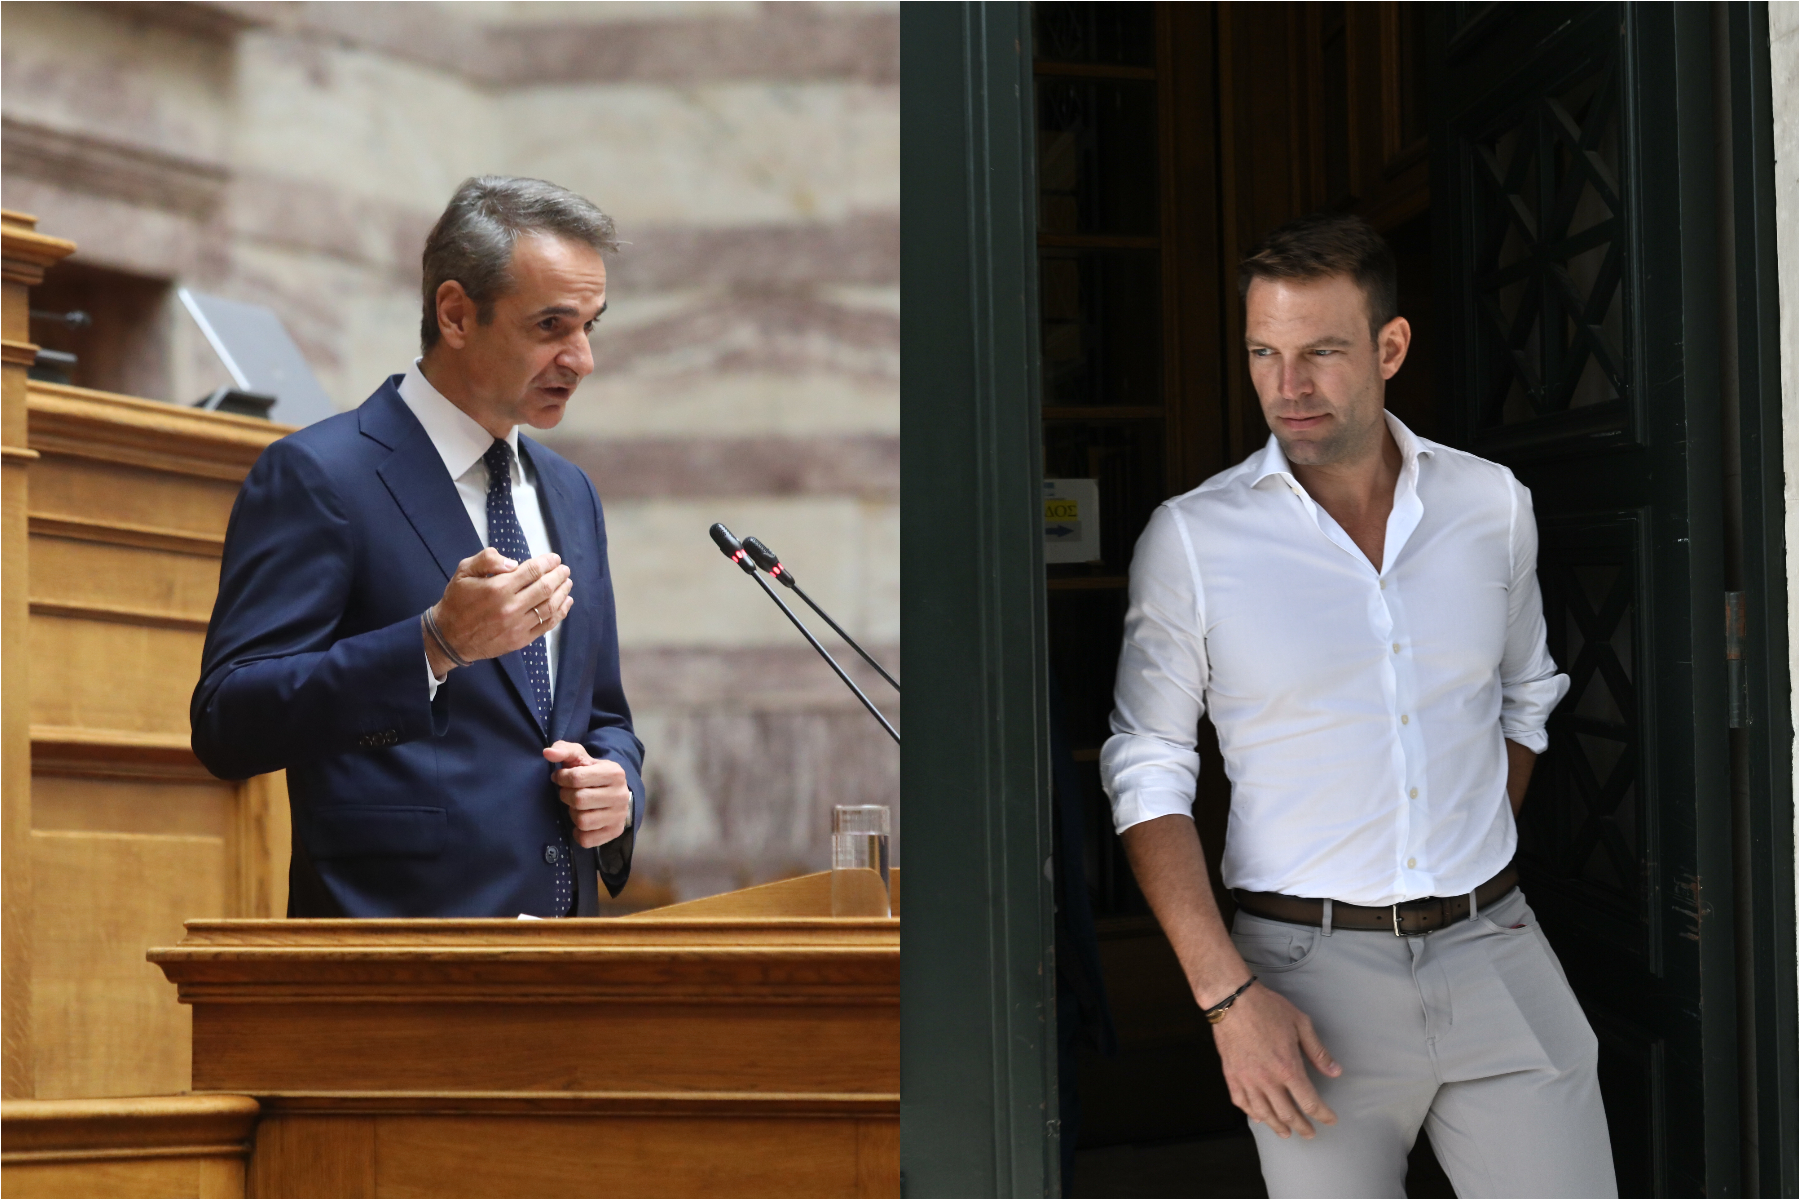 Ευρωεκλογές: Πρώτη σε «σταυρούς» η ακρίβεια - Αναταράξεις σε ΝΔ και ΣΥΡΙΖΑ για υποψήφιους και στρατηγικές